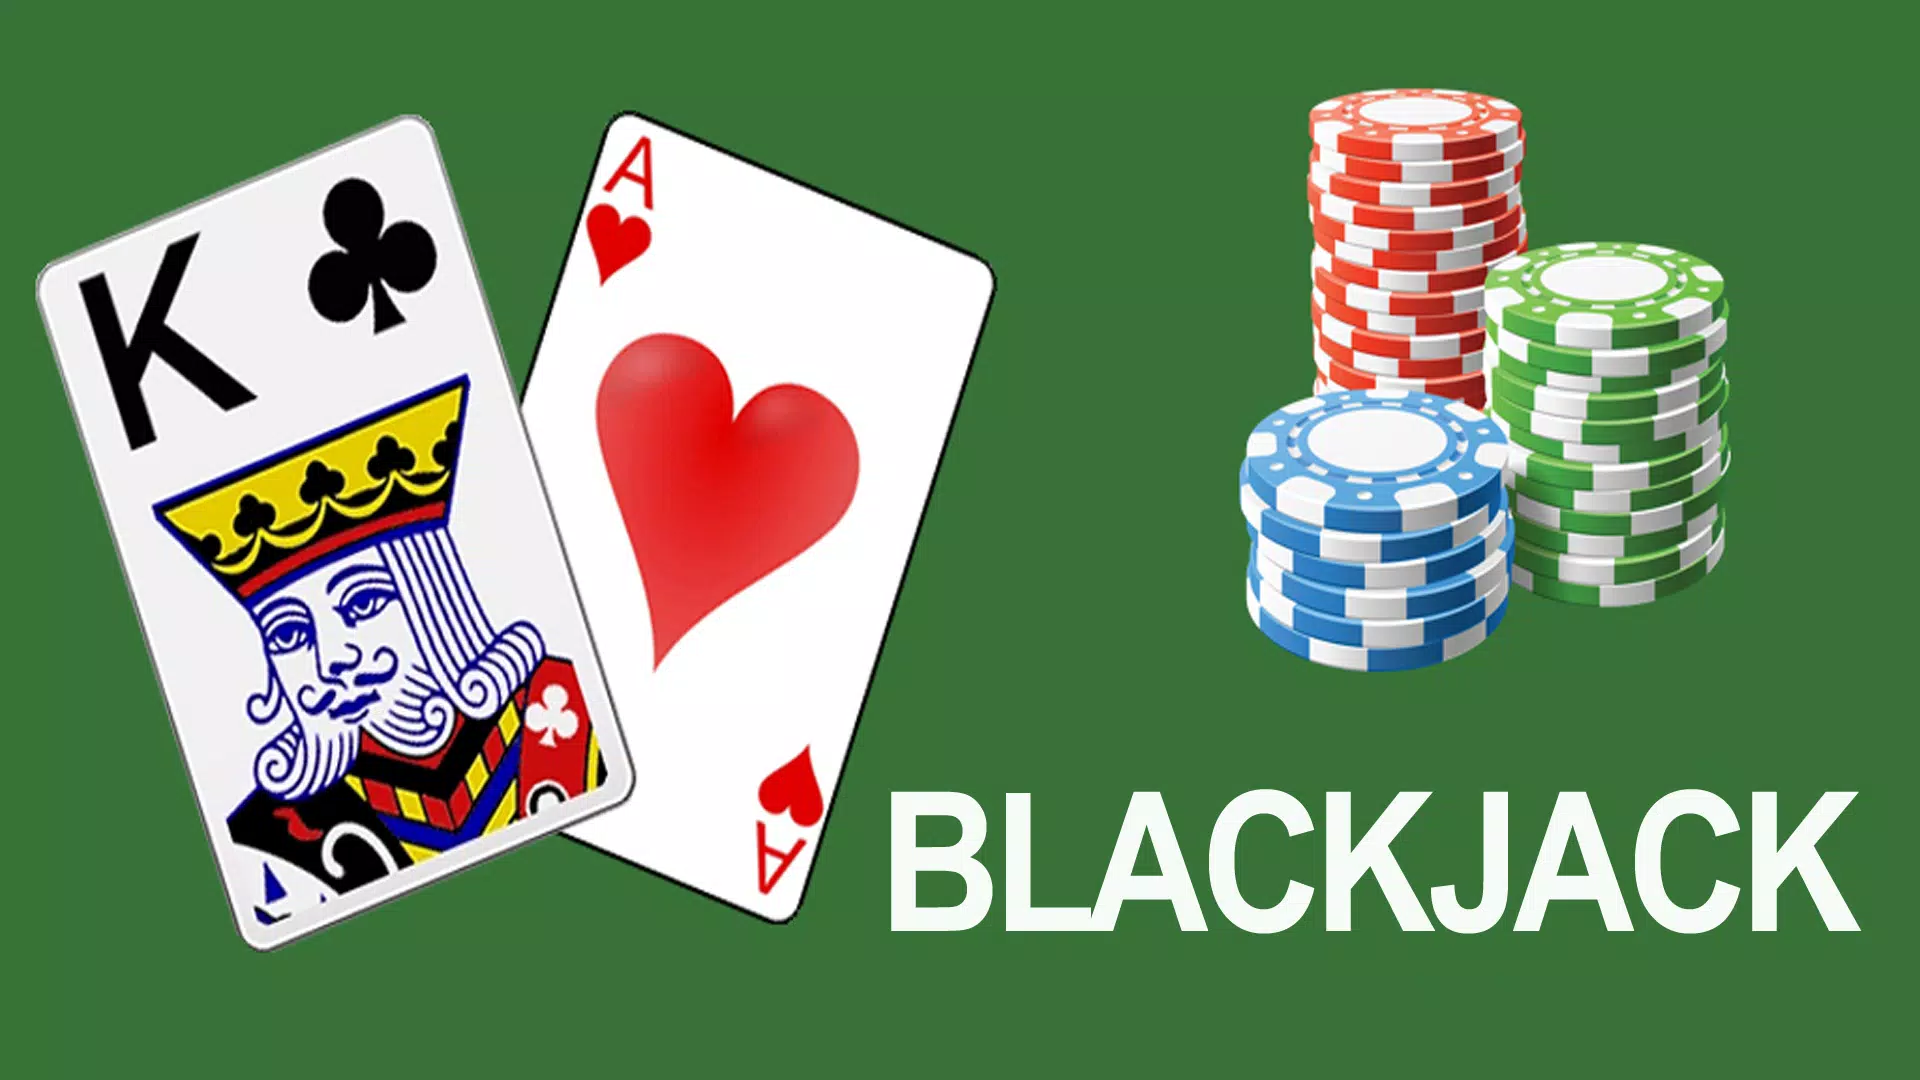 Black jack tudo em um Casino grátis e offline jogos de cartas em